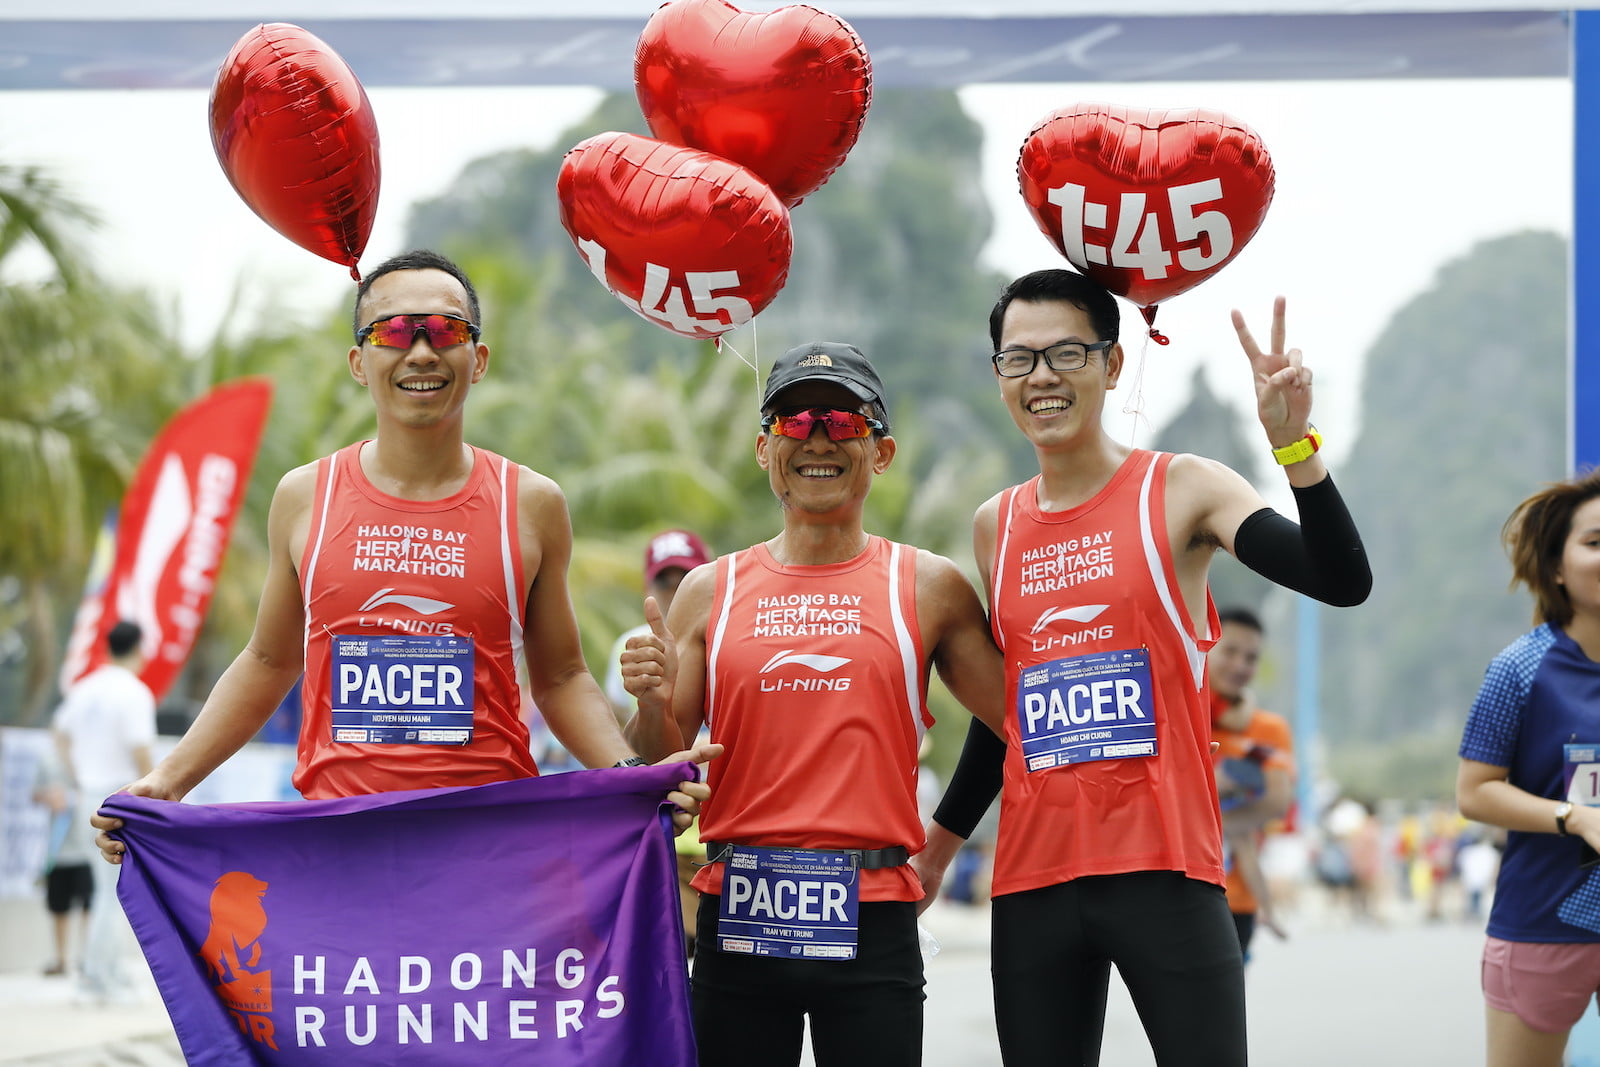 [QC] Những người bạn đồng hành đáng tin cậy trong Halong Bay Heritage Marathon 2020 - halong bay heritage marathon 2020 1